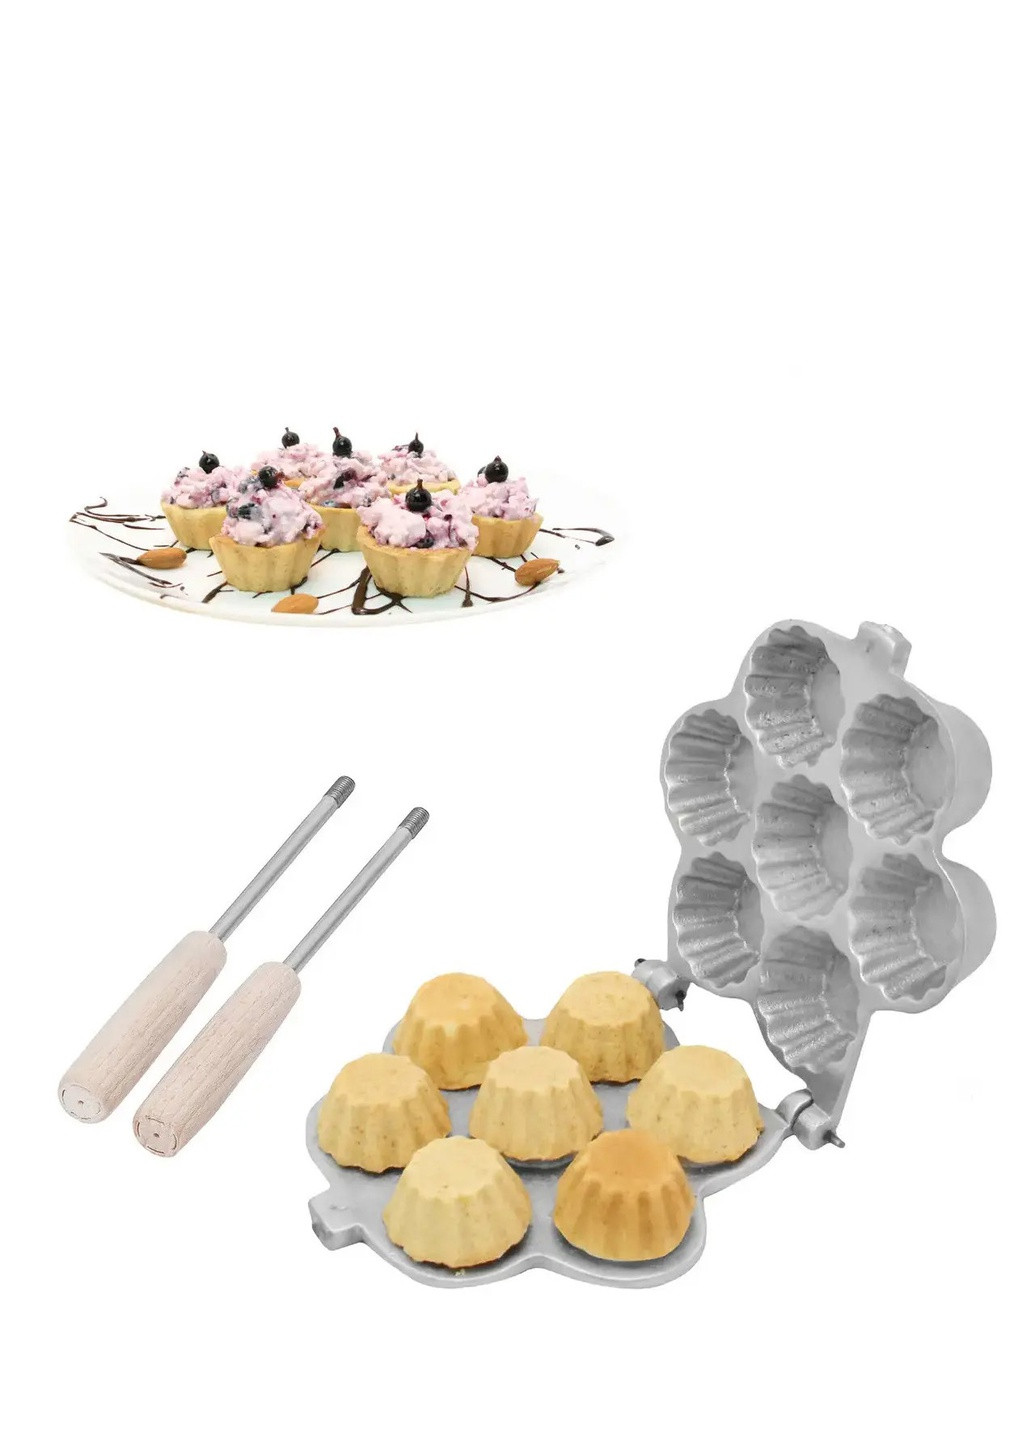 Форма для випічки кексів, кошиків і тарталеток (7 кошиків) зі знімними ручками RS (259017801)